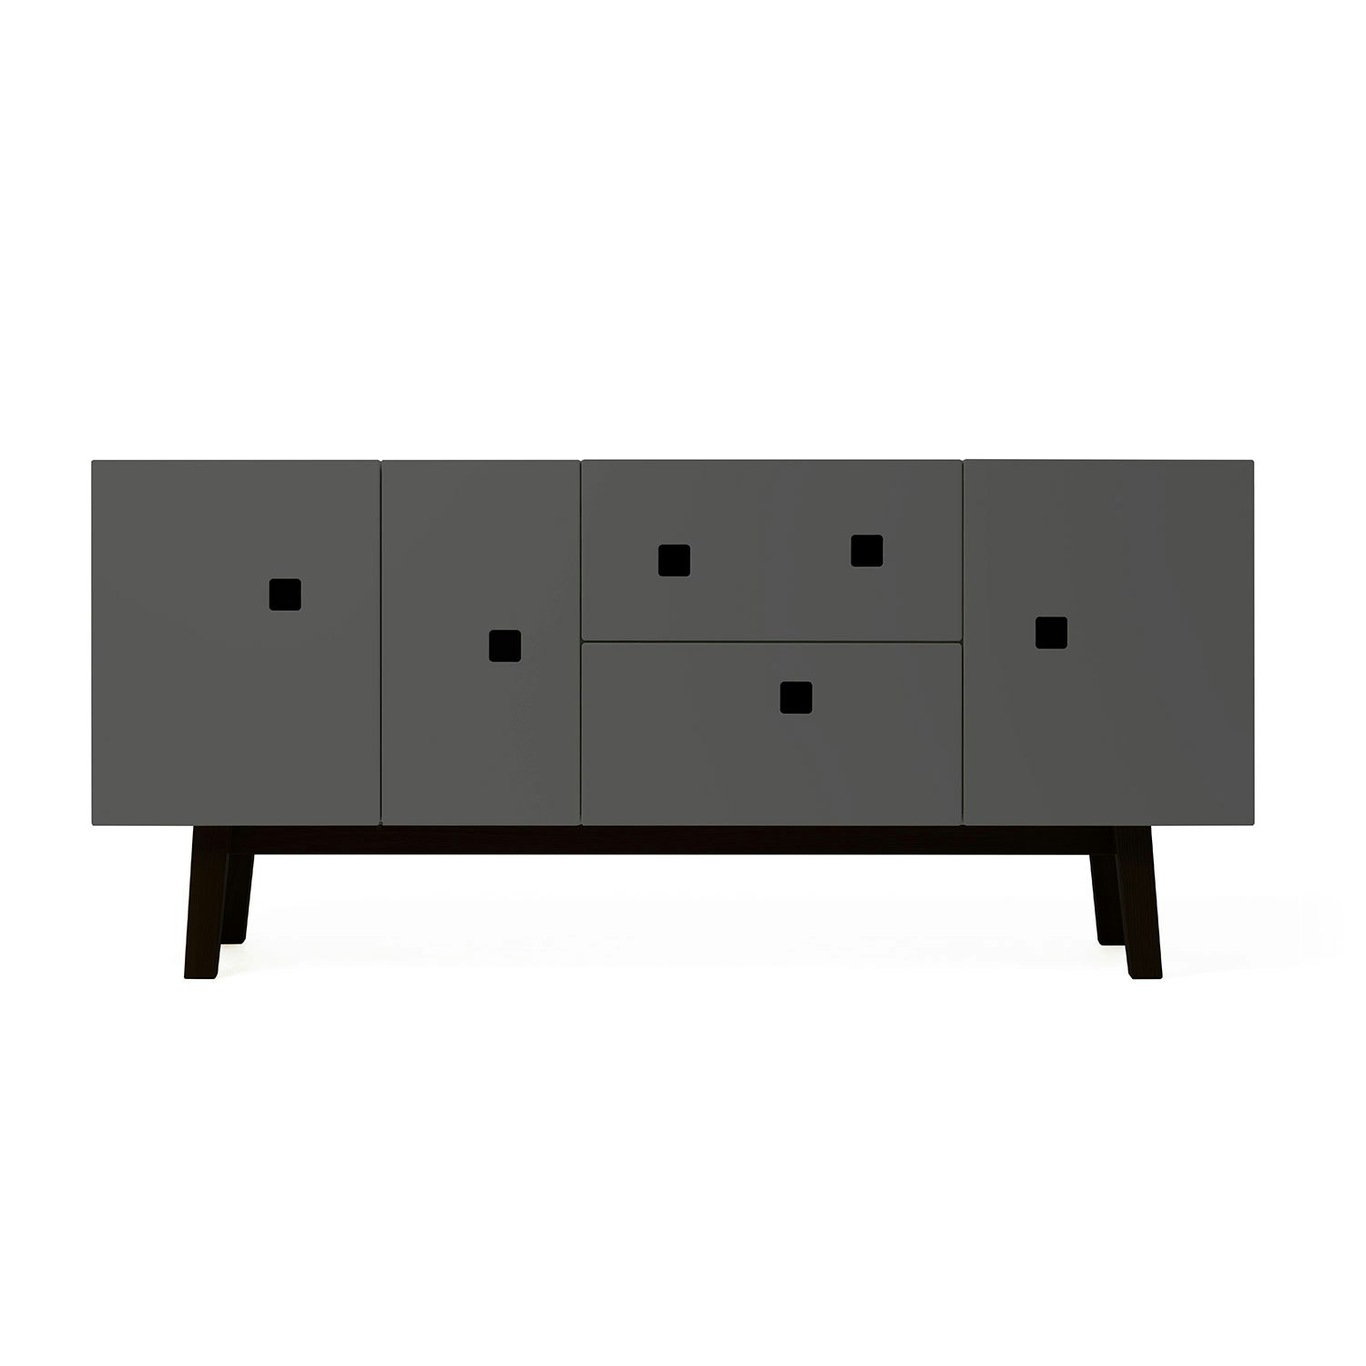 PeepM2 Media Furniture, Slate Grey/Black